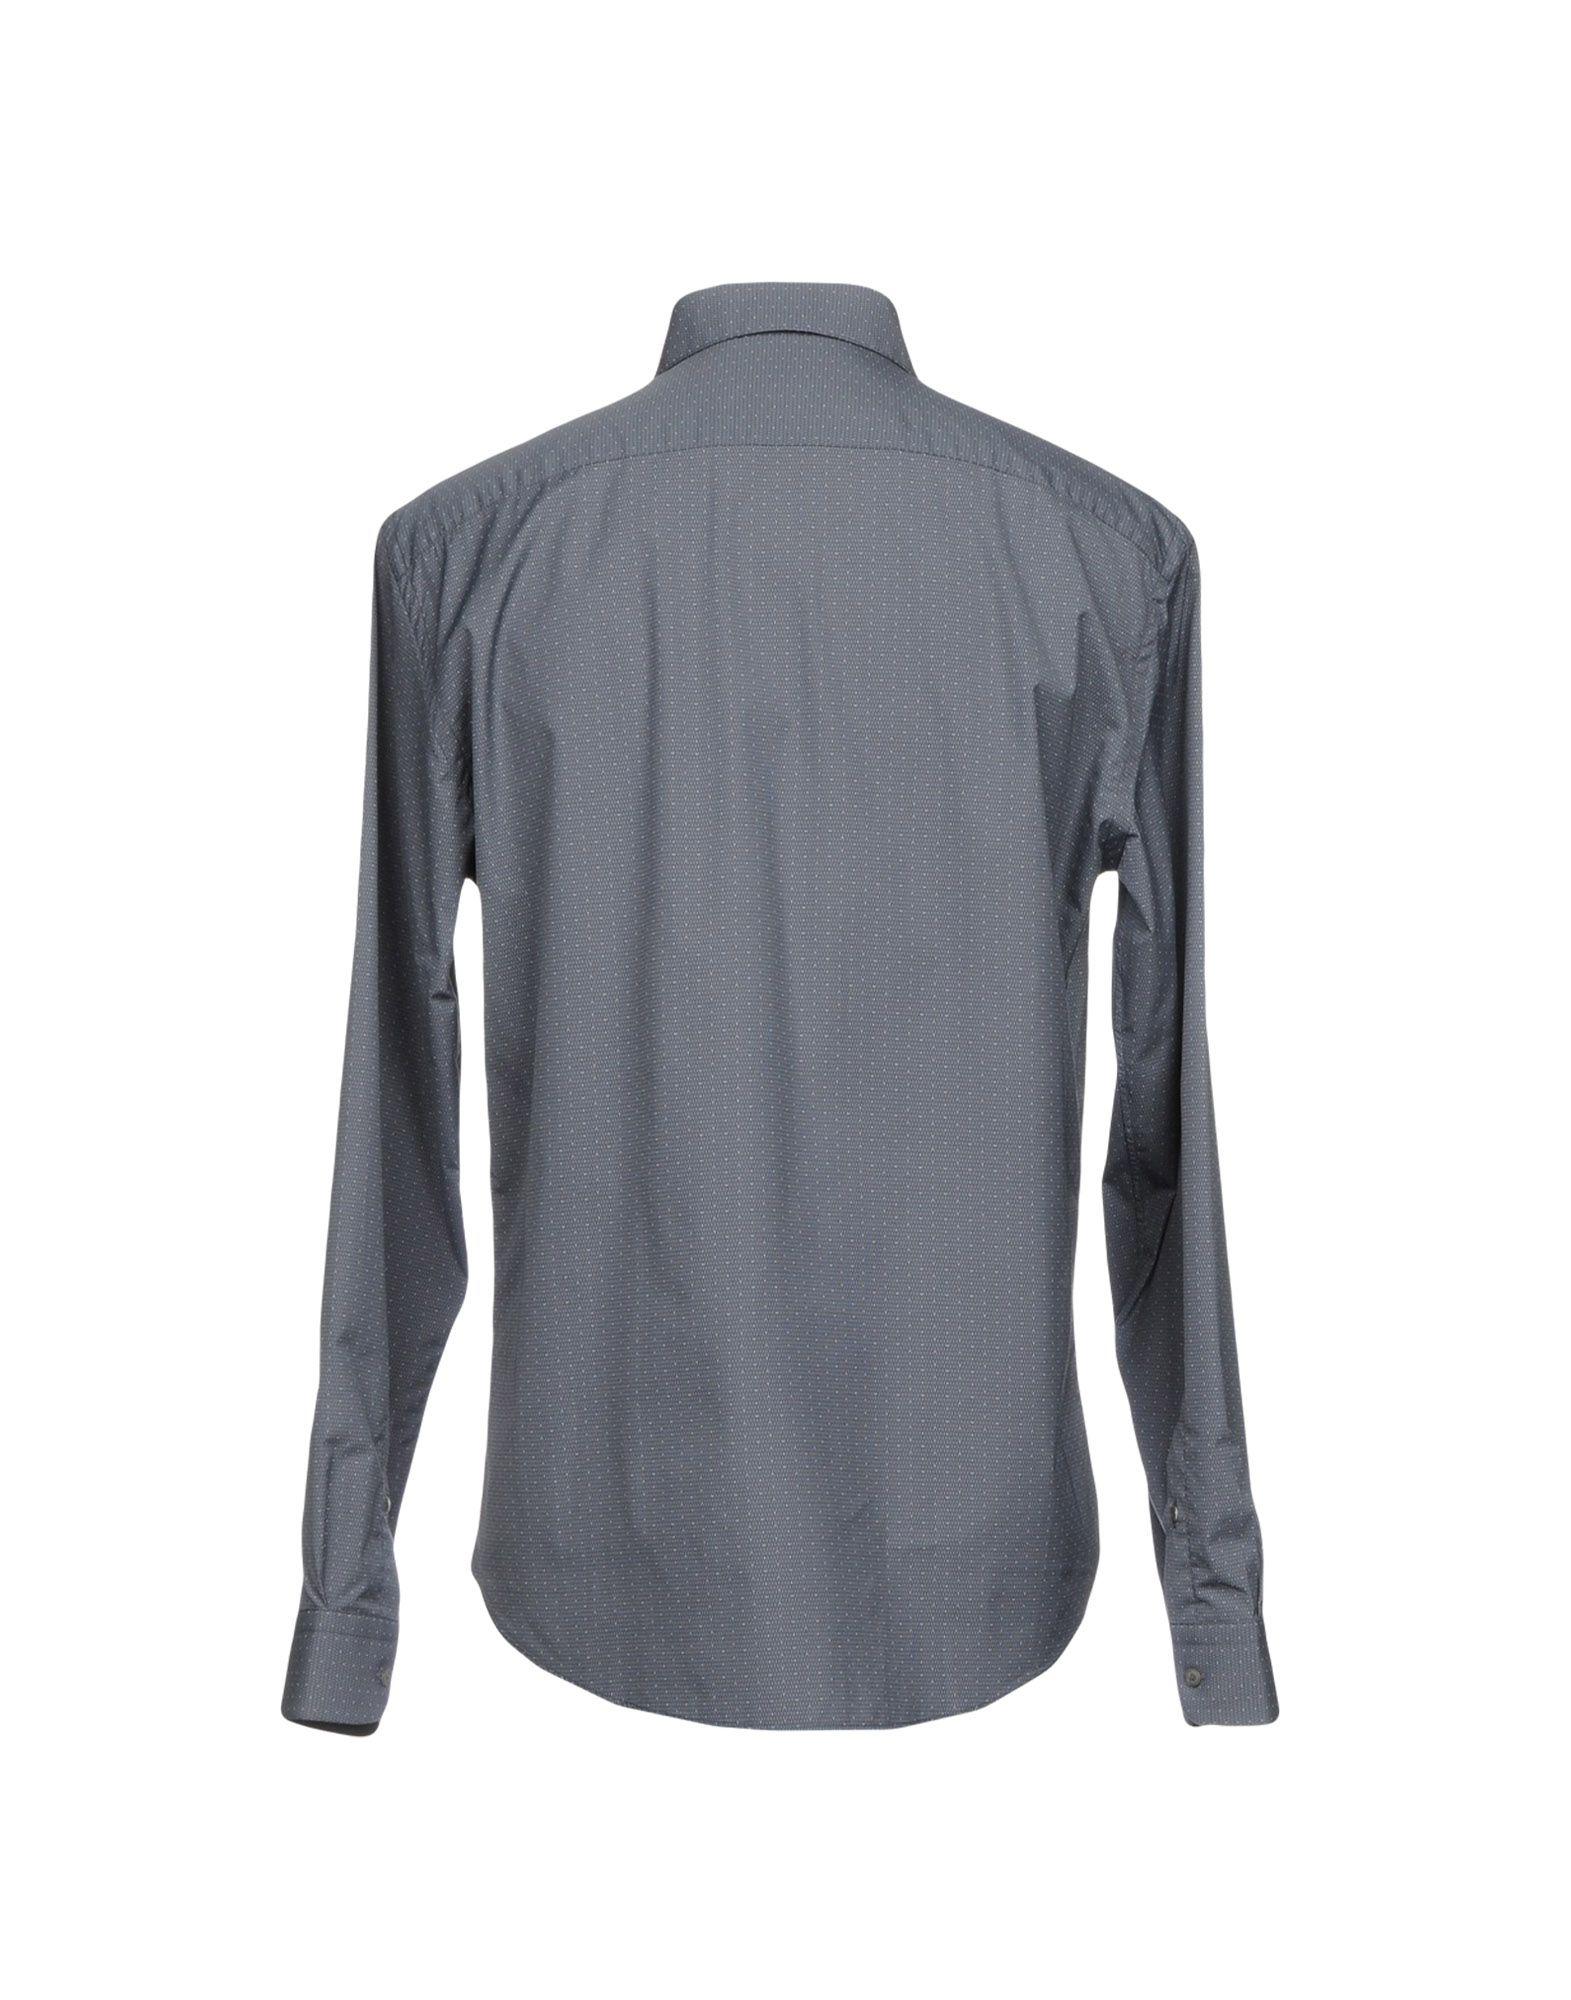 Robert Friedman Cotton Shirt in Grey (Gray) for Men - Lyst